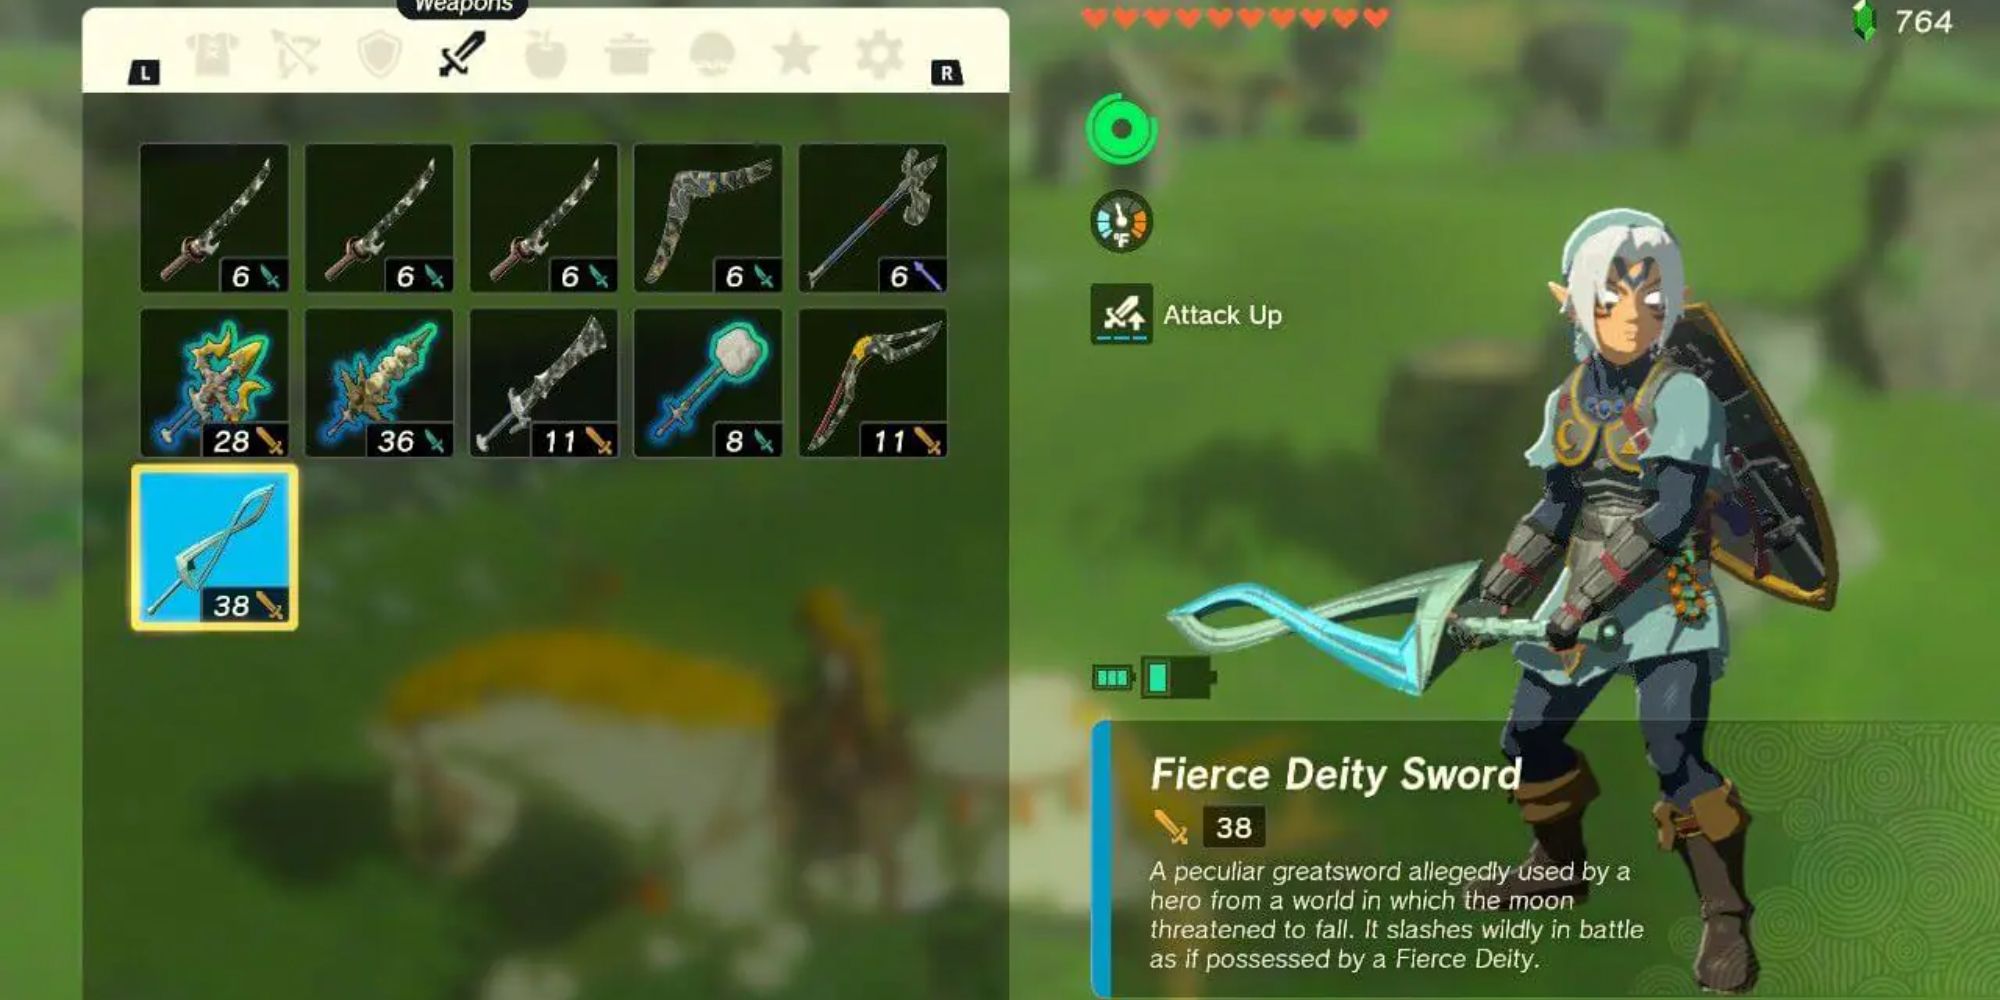 The Fierce Deity Sword in Link's inventory